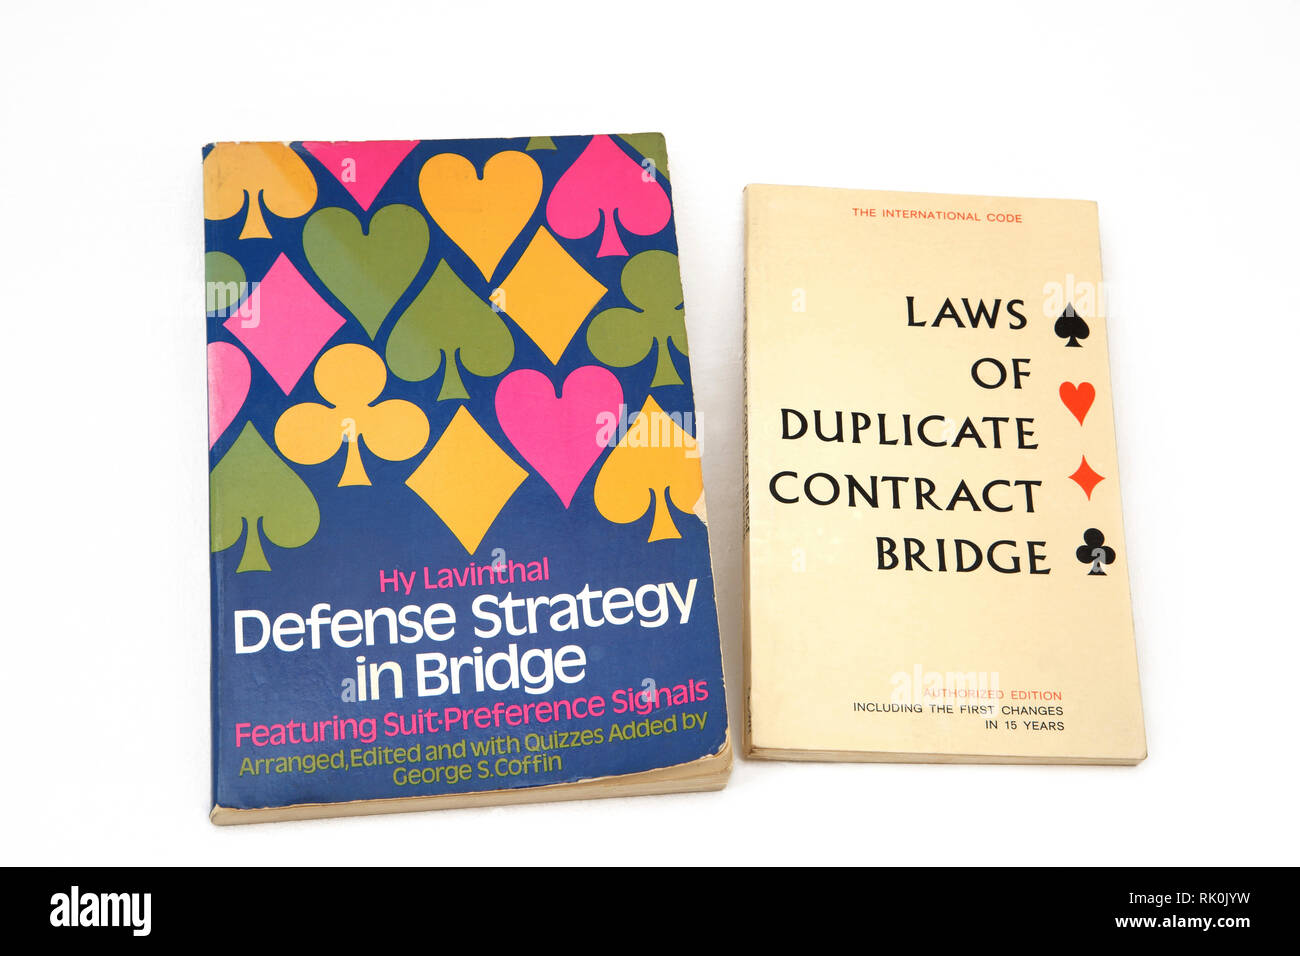 Libri sul ponte - Strategia di difesa in ponte e le leggi del contratto Duplicate Bridge Foto Stock